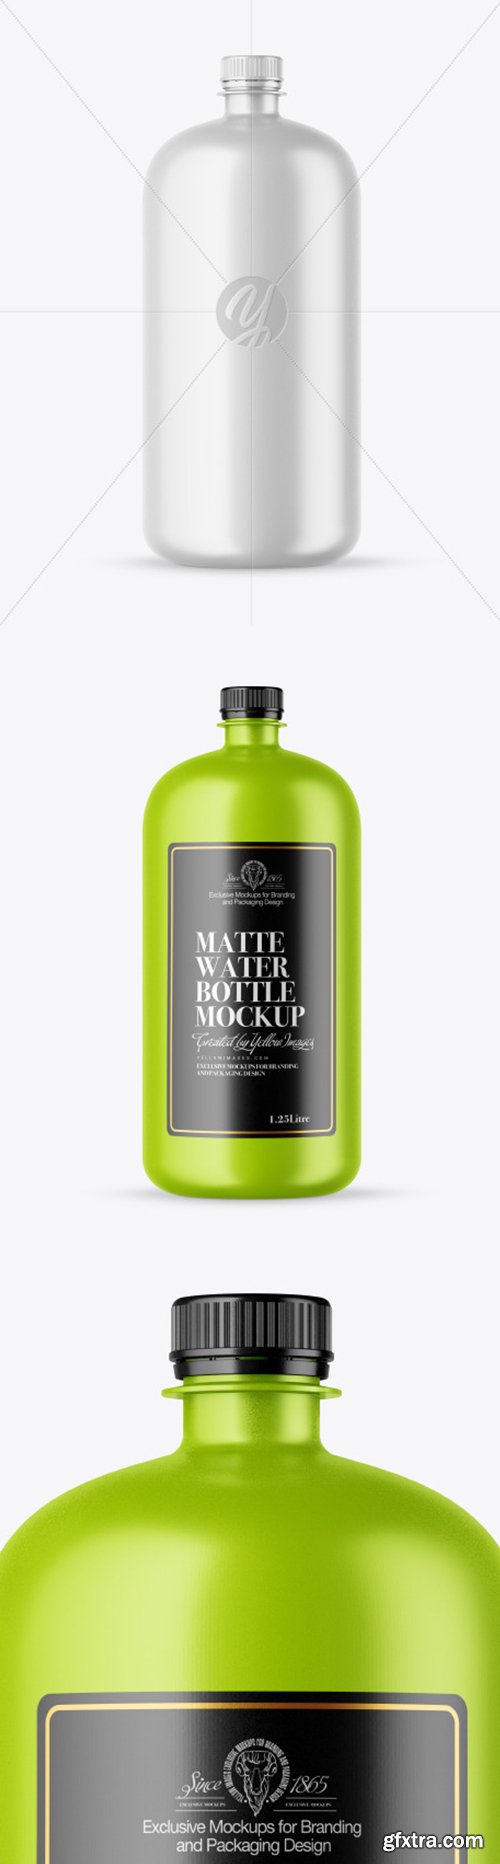 Matte Water Bottle Mockup 51987